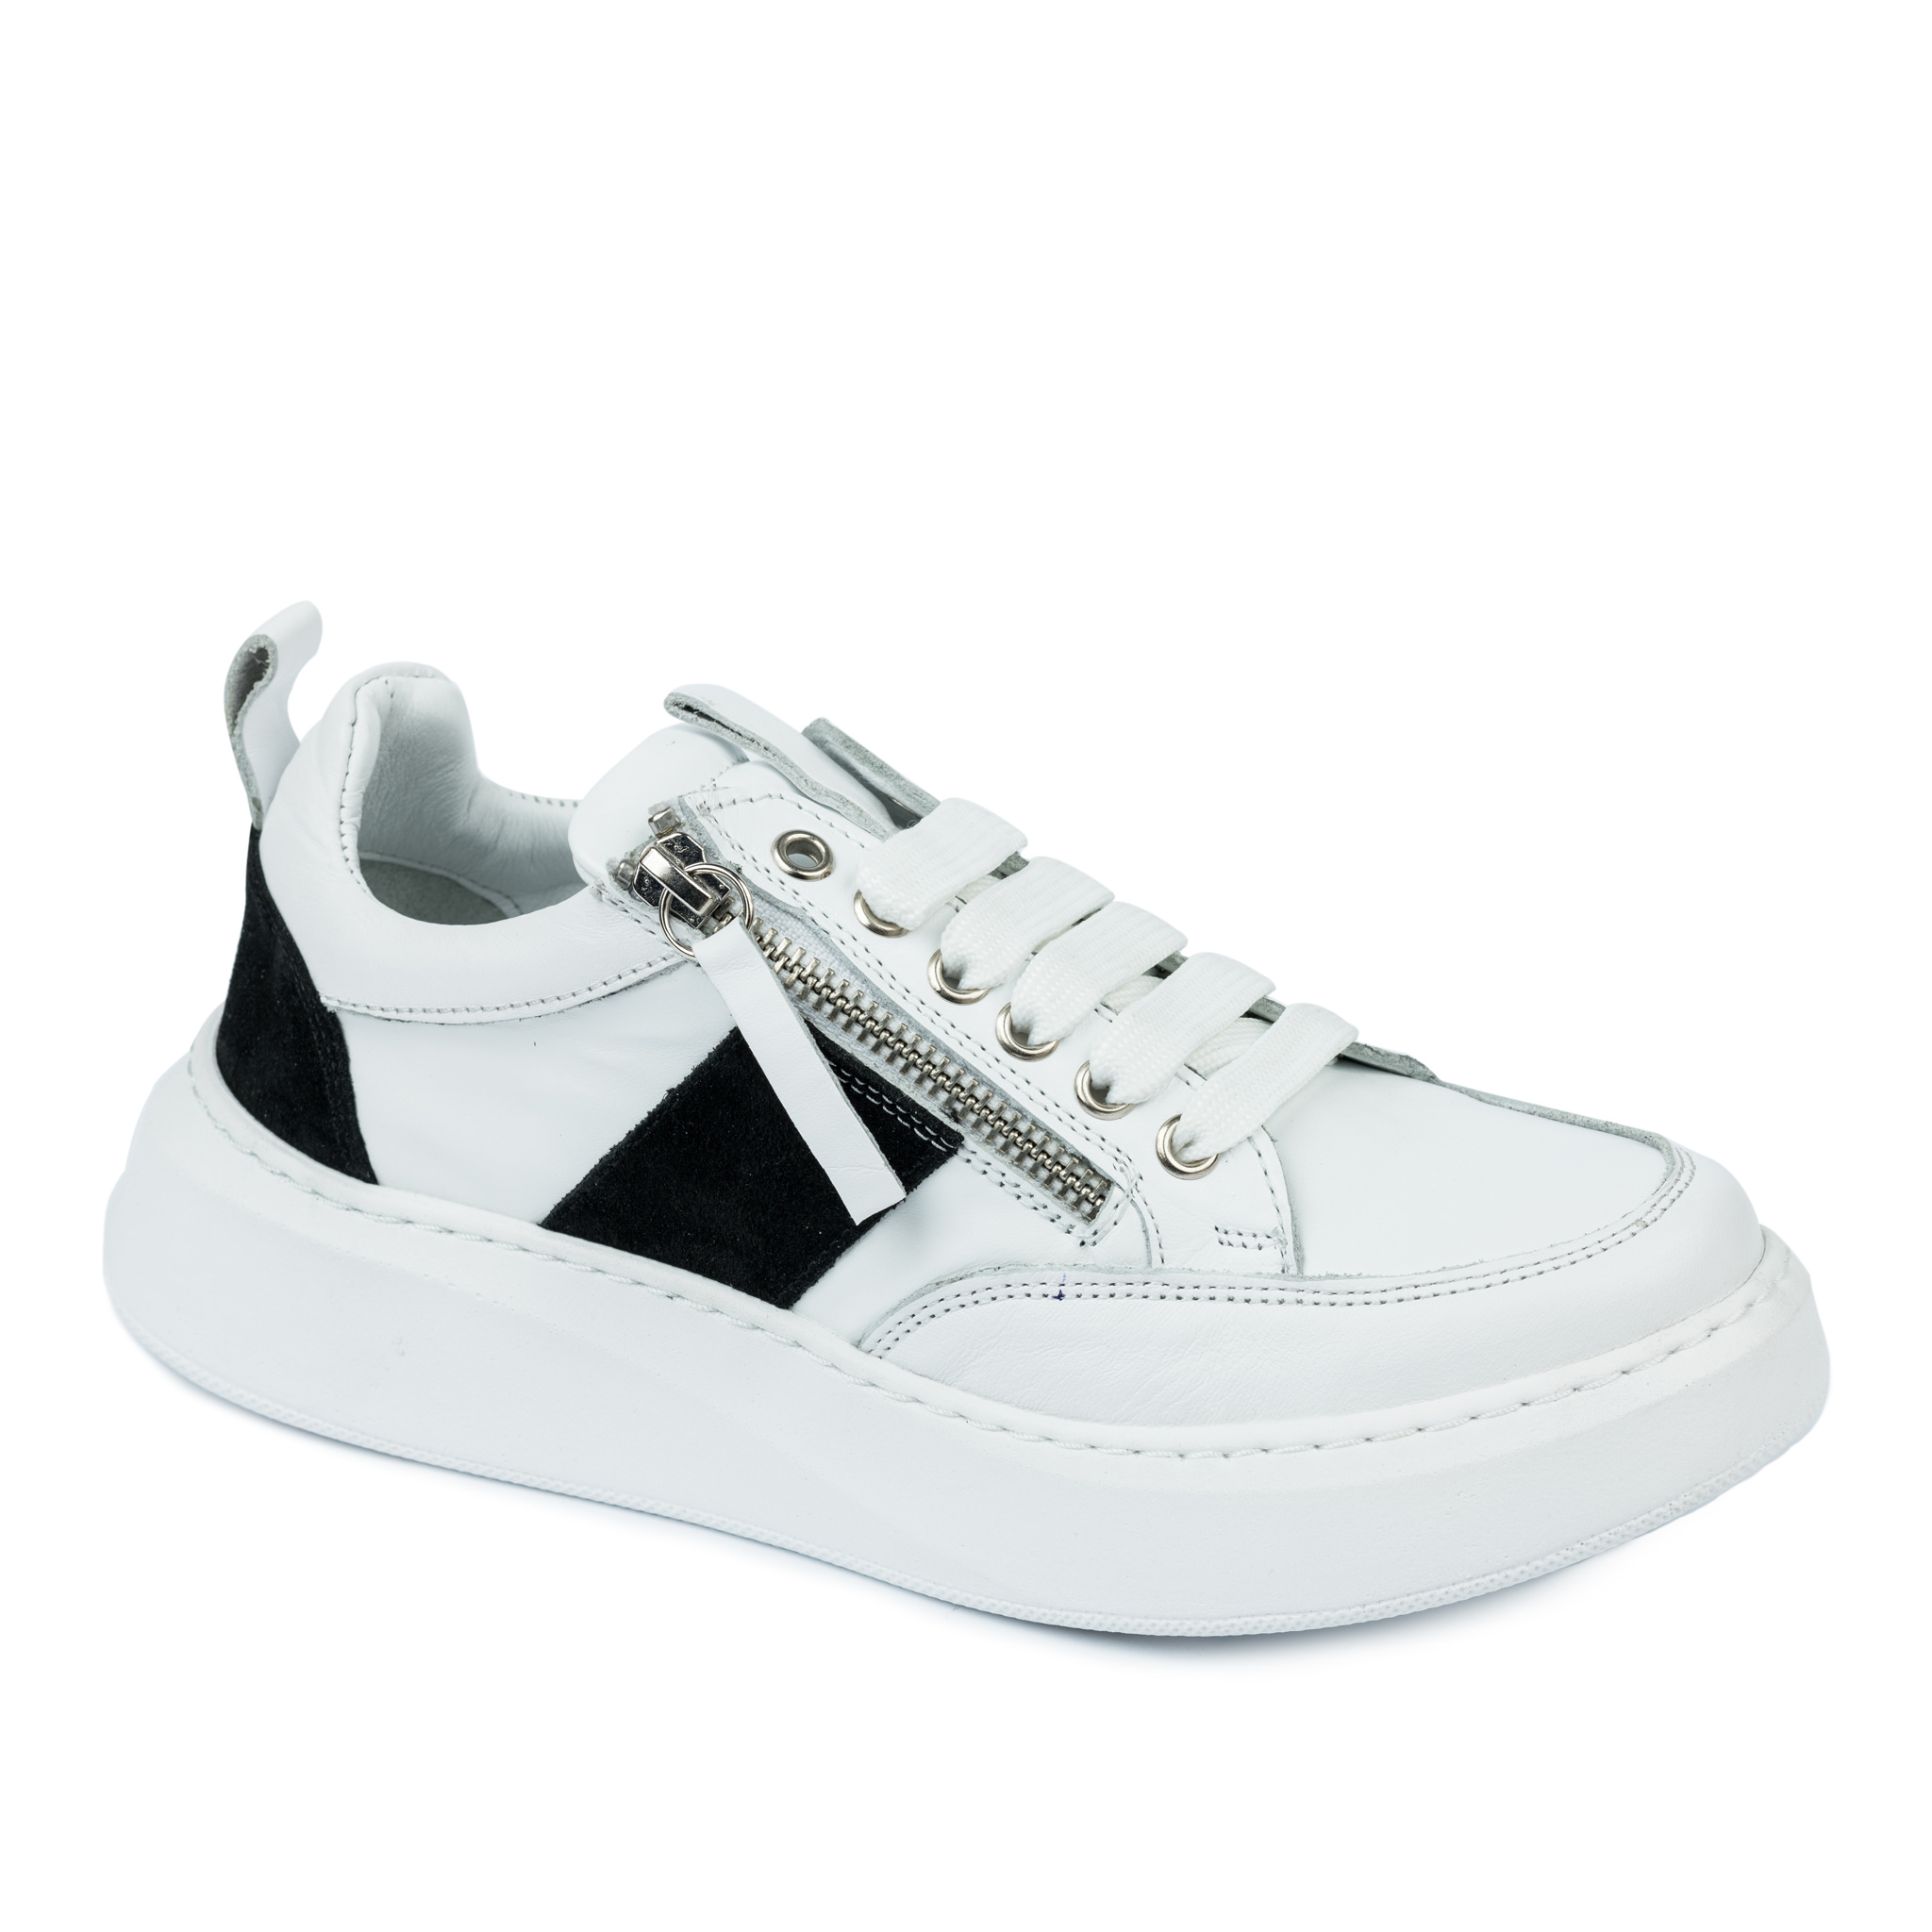 Women sneakers A322 - WHITE